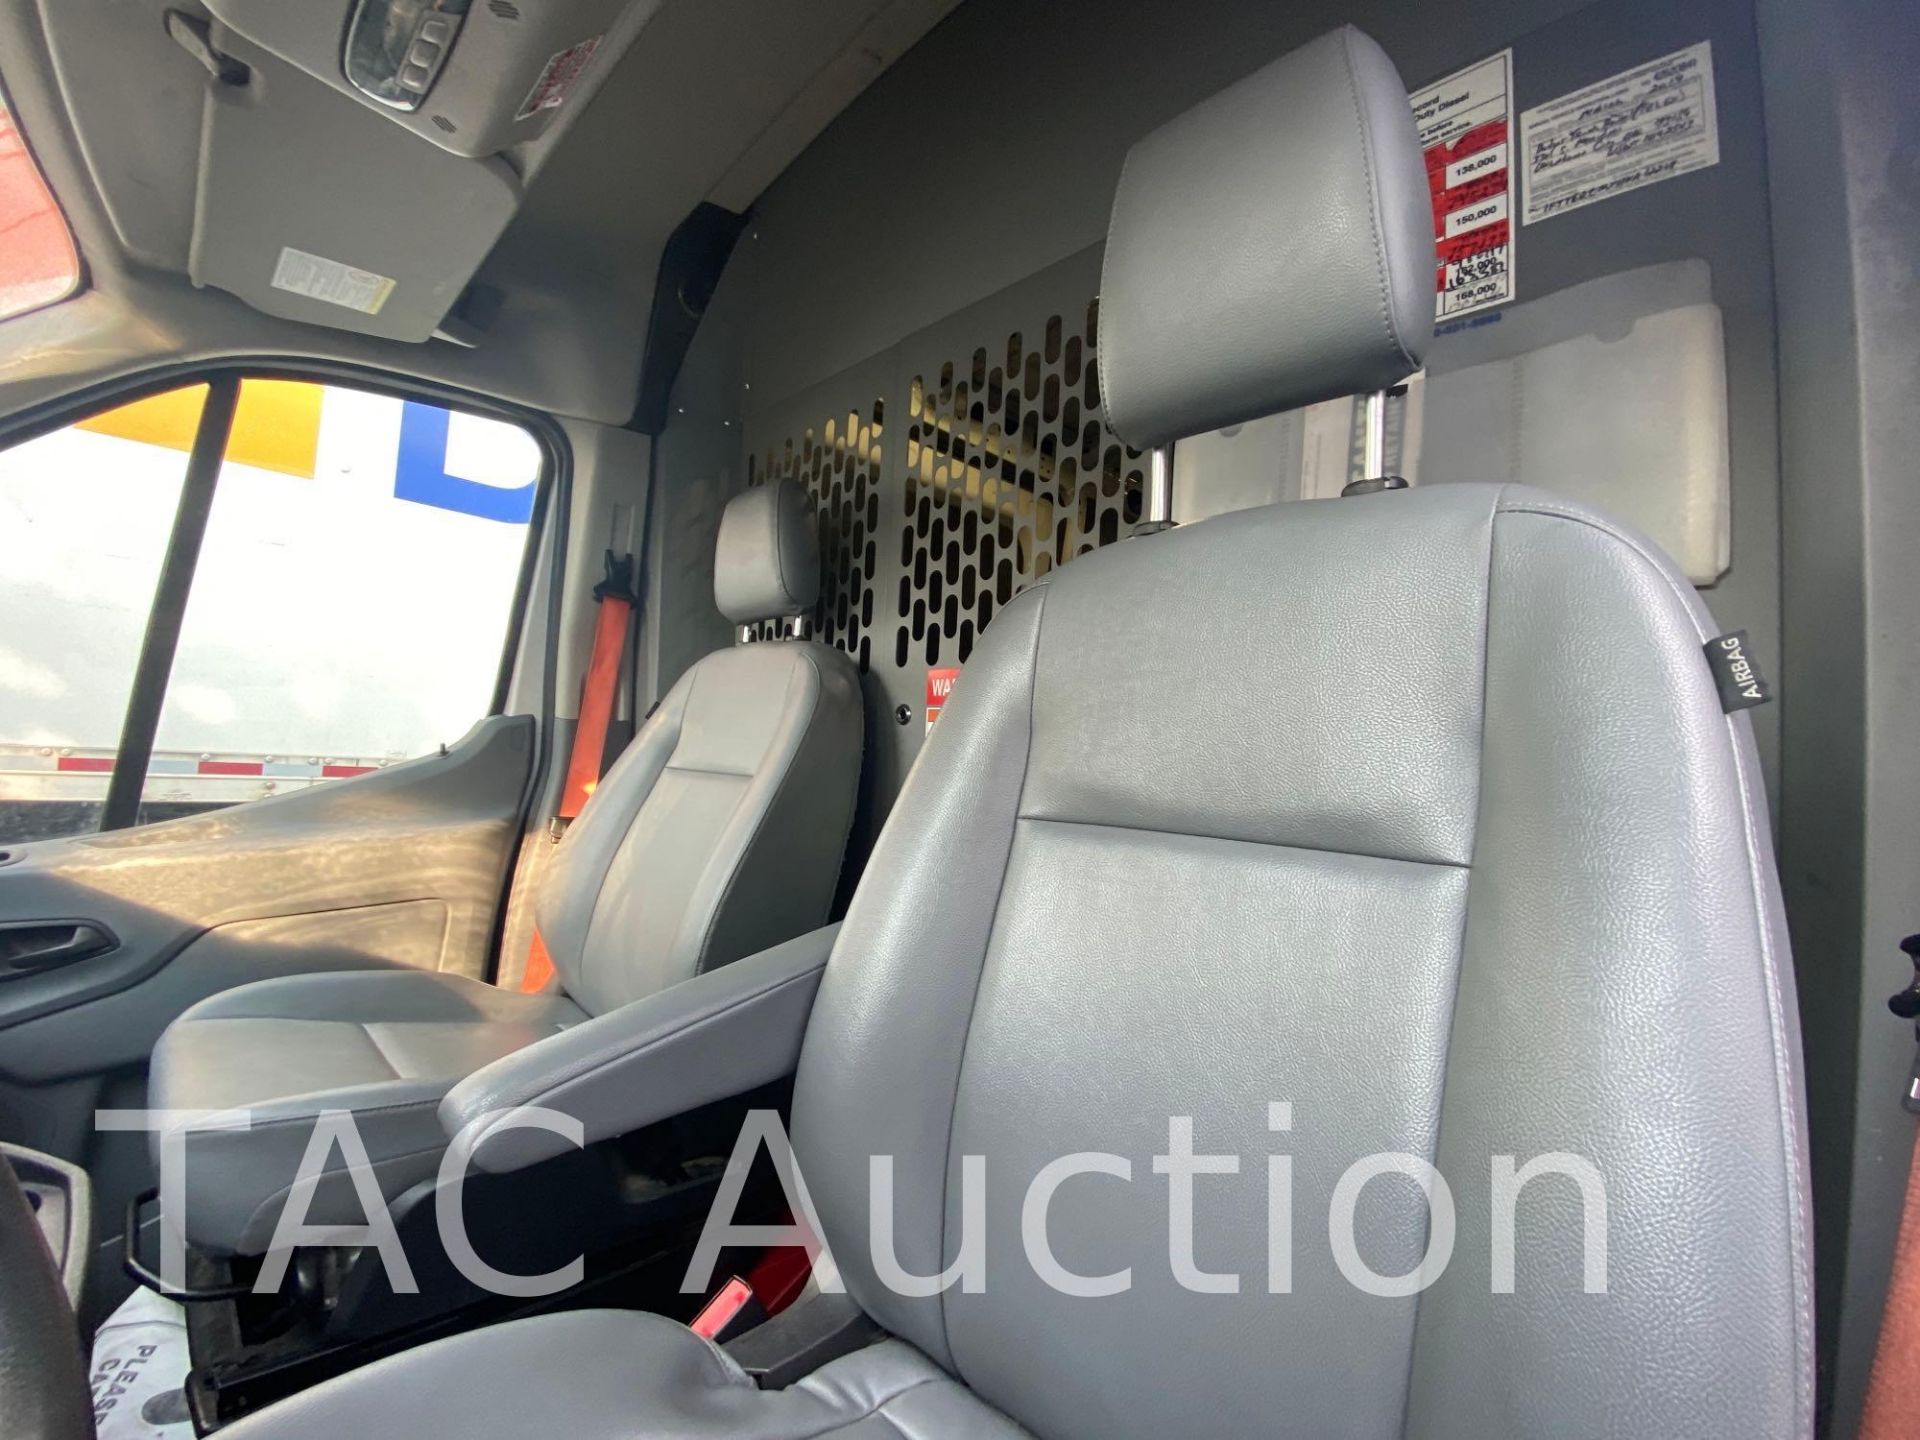 2017 Ford Transit 150 Cargo Van - Image 16 of 53